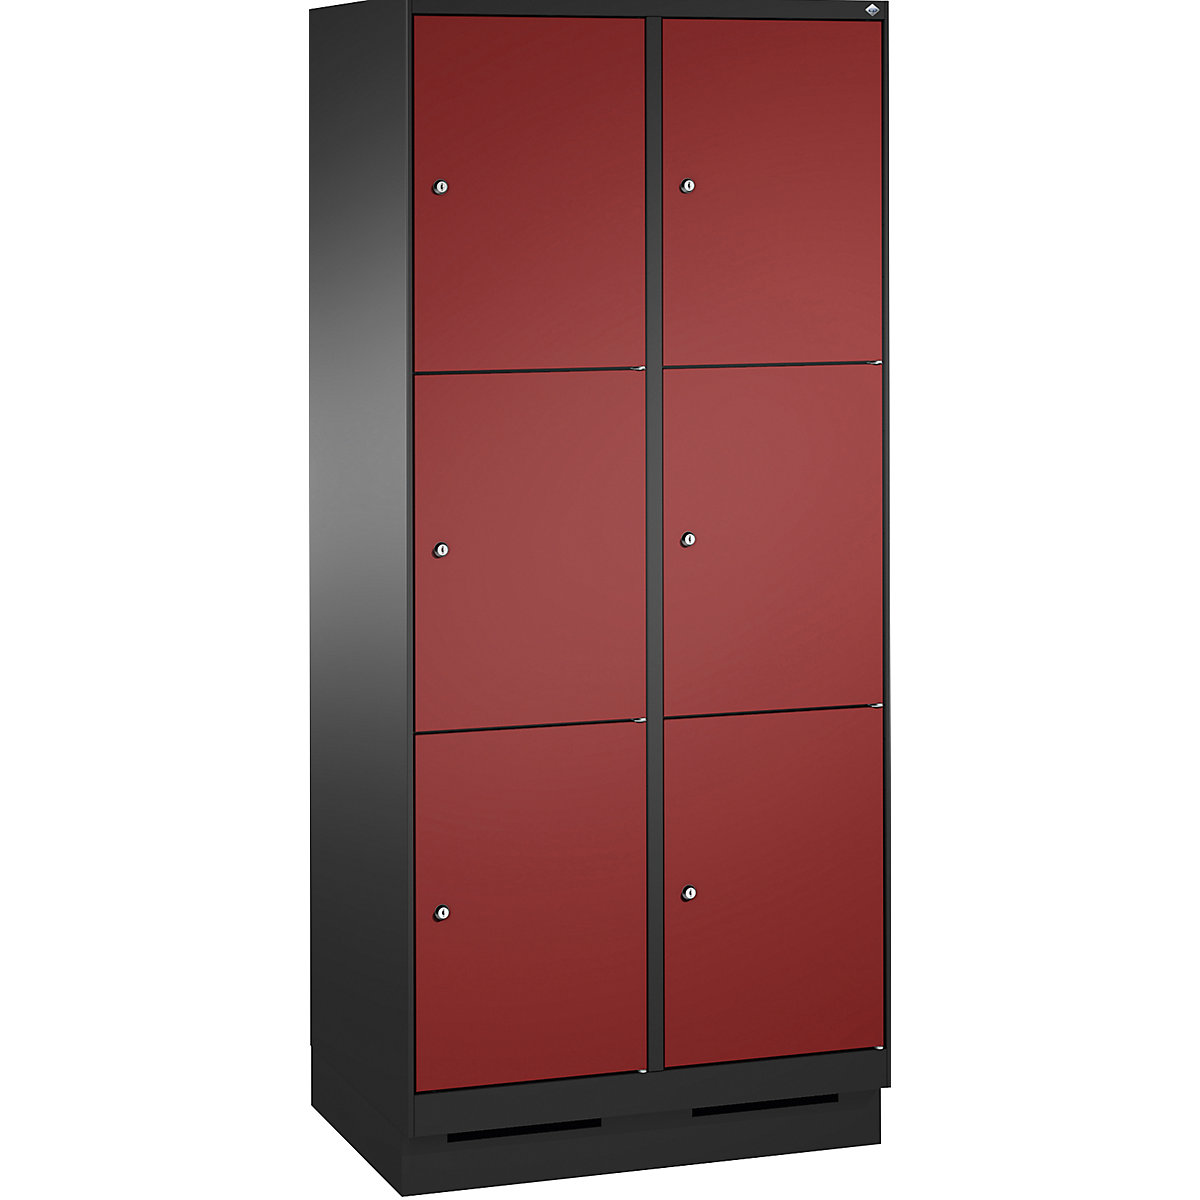 Armoire à casiers sur socle EVOLO – C+P, 2 compartiments, 3 casiers chacun, largeur compartiments 400 mm, gris noir / rouge rubis-14